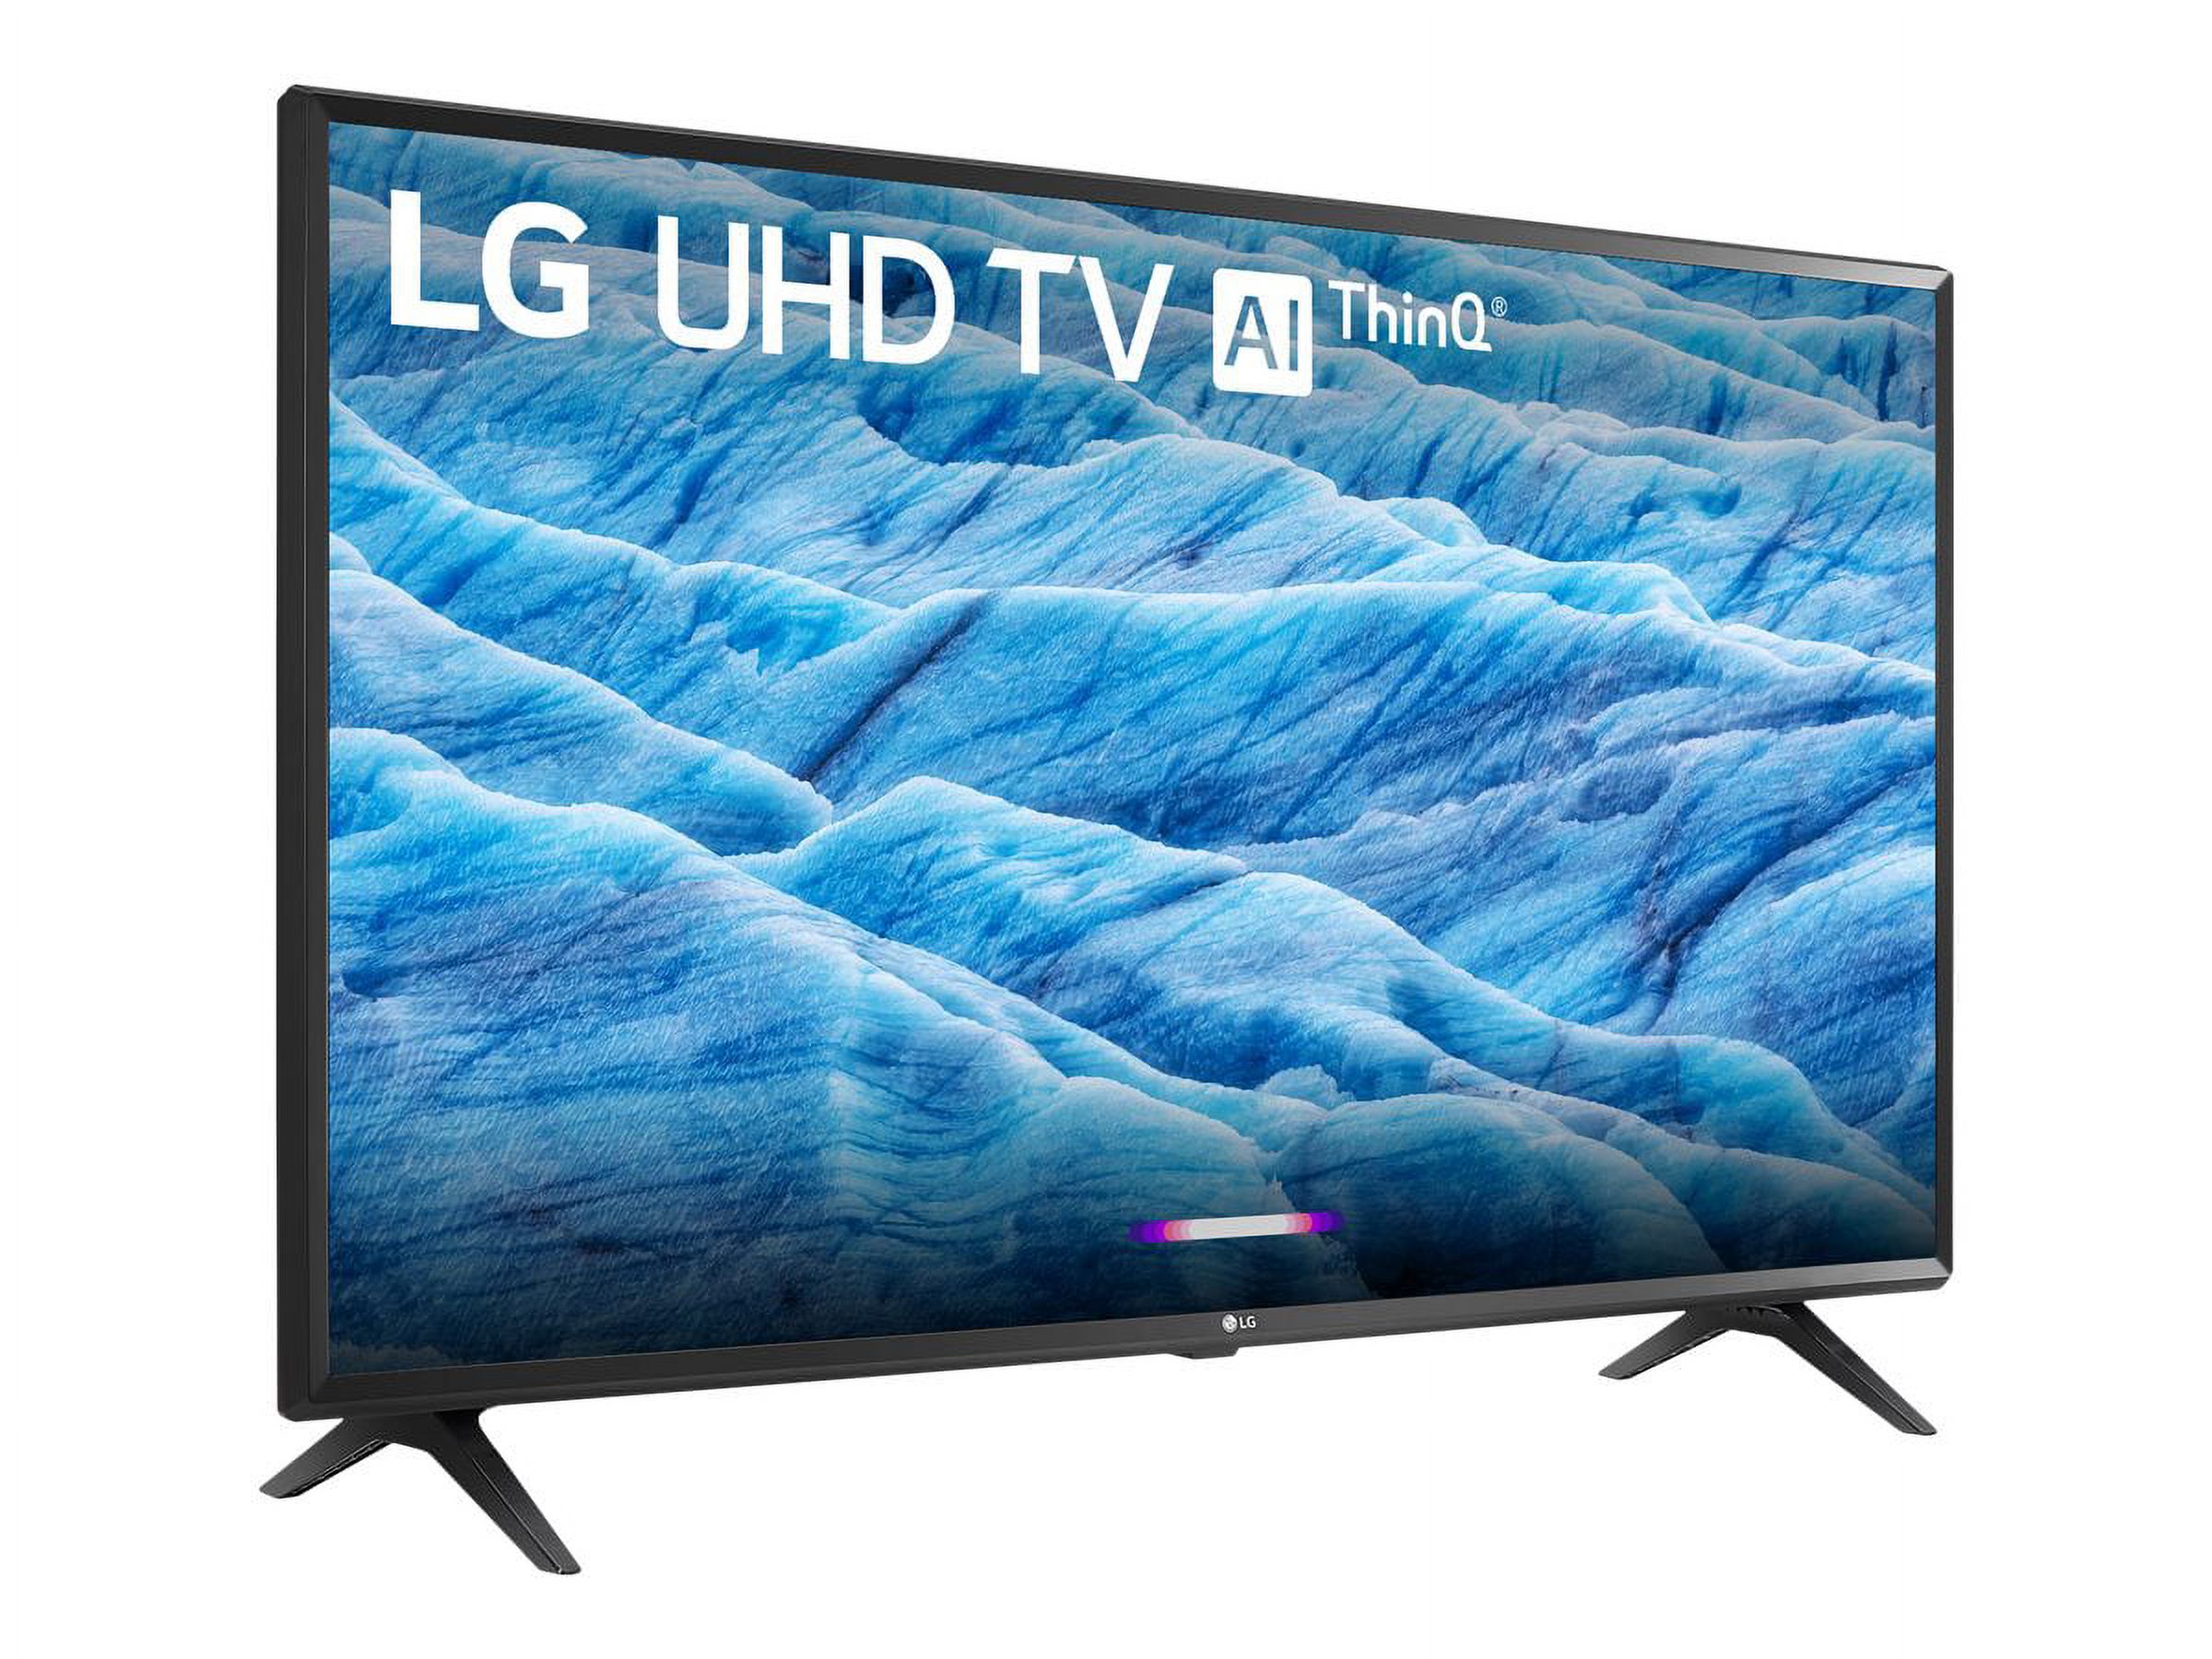 LG 49" Class HDR Smart LED-LCD TV (49UM6900PUA) - image 4 of 15